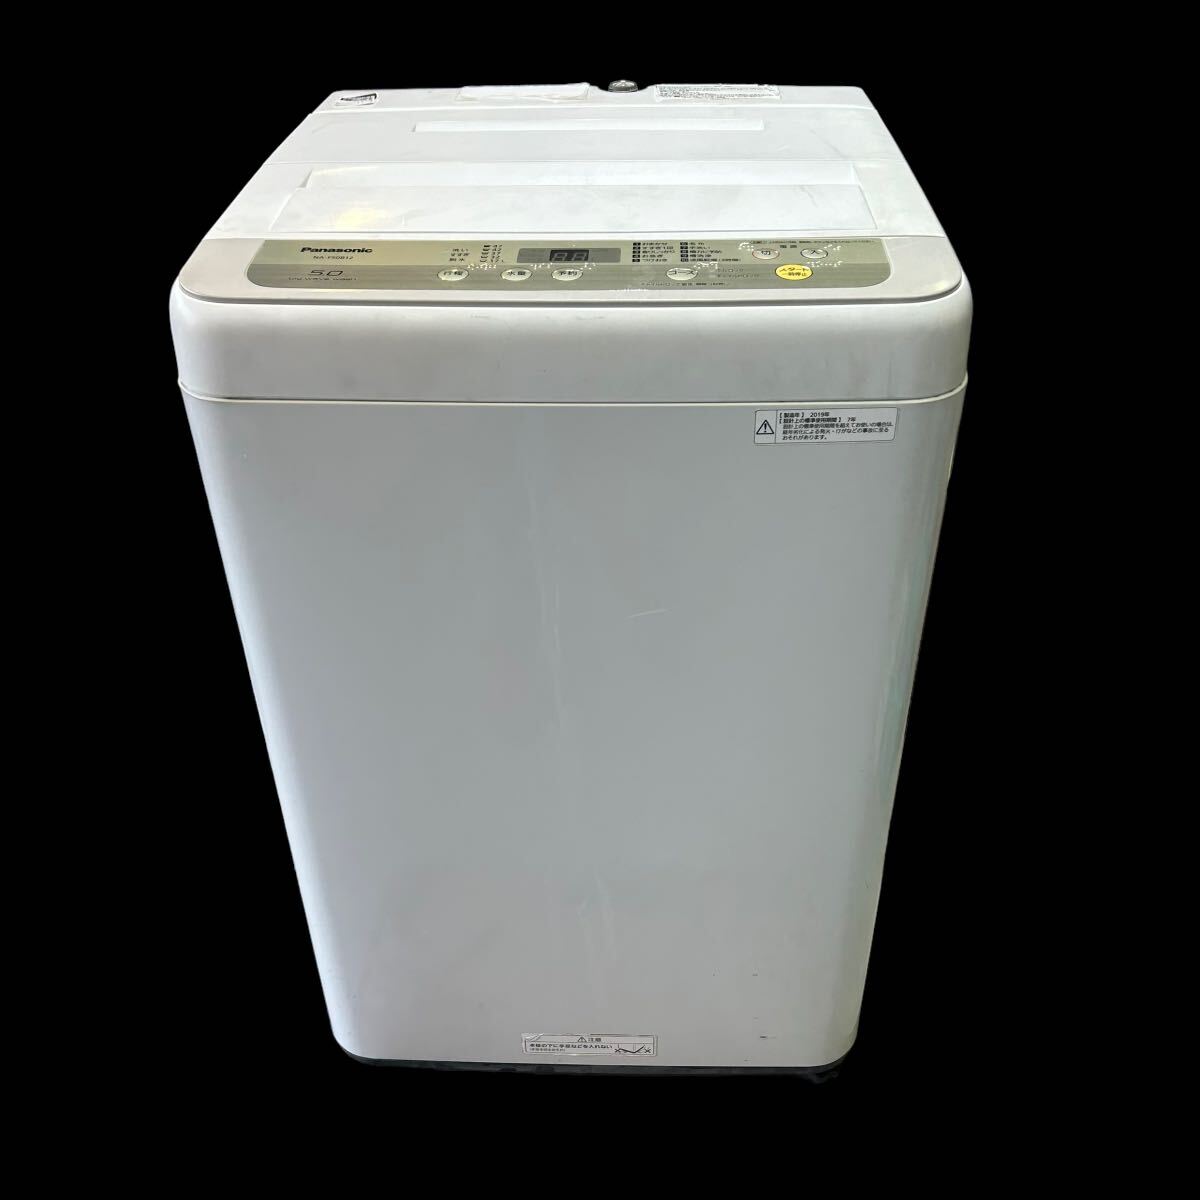 パナソニック Panasonic 全自動洗濯機 NA-F50B12 2019年製 ホワイト 5kg シンプル仕様 ビッグウェーブ洗浄 防カビ _画像2